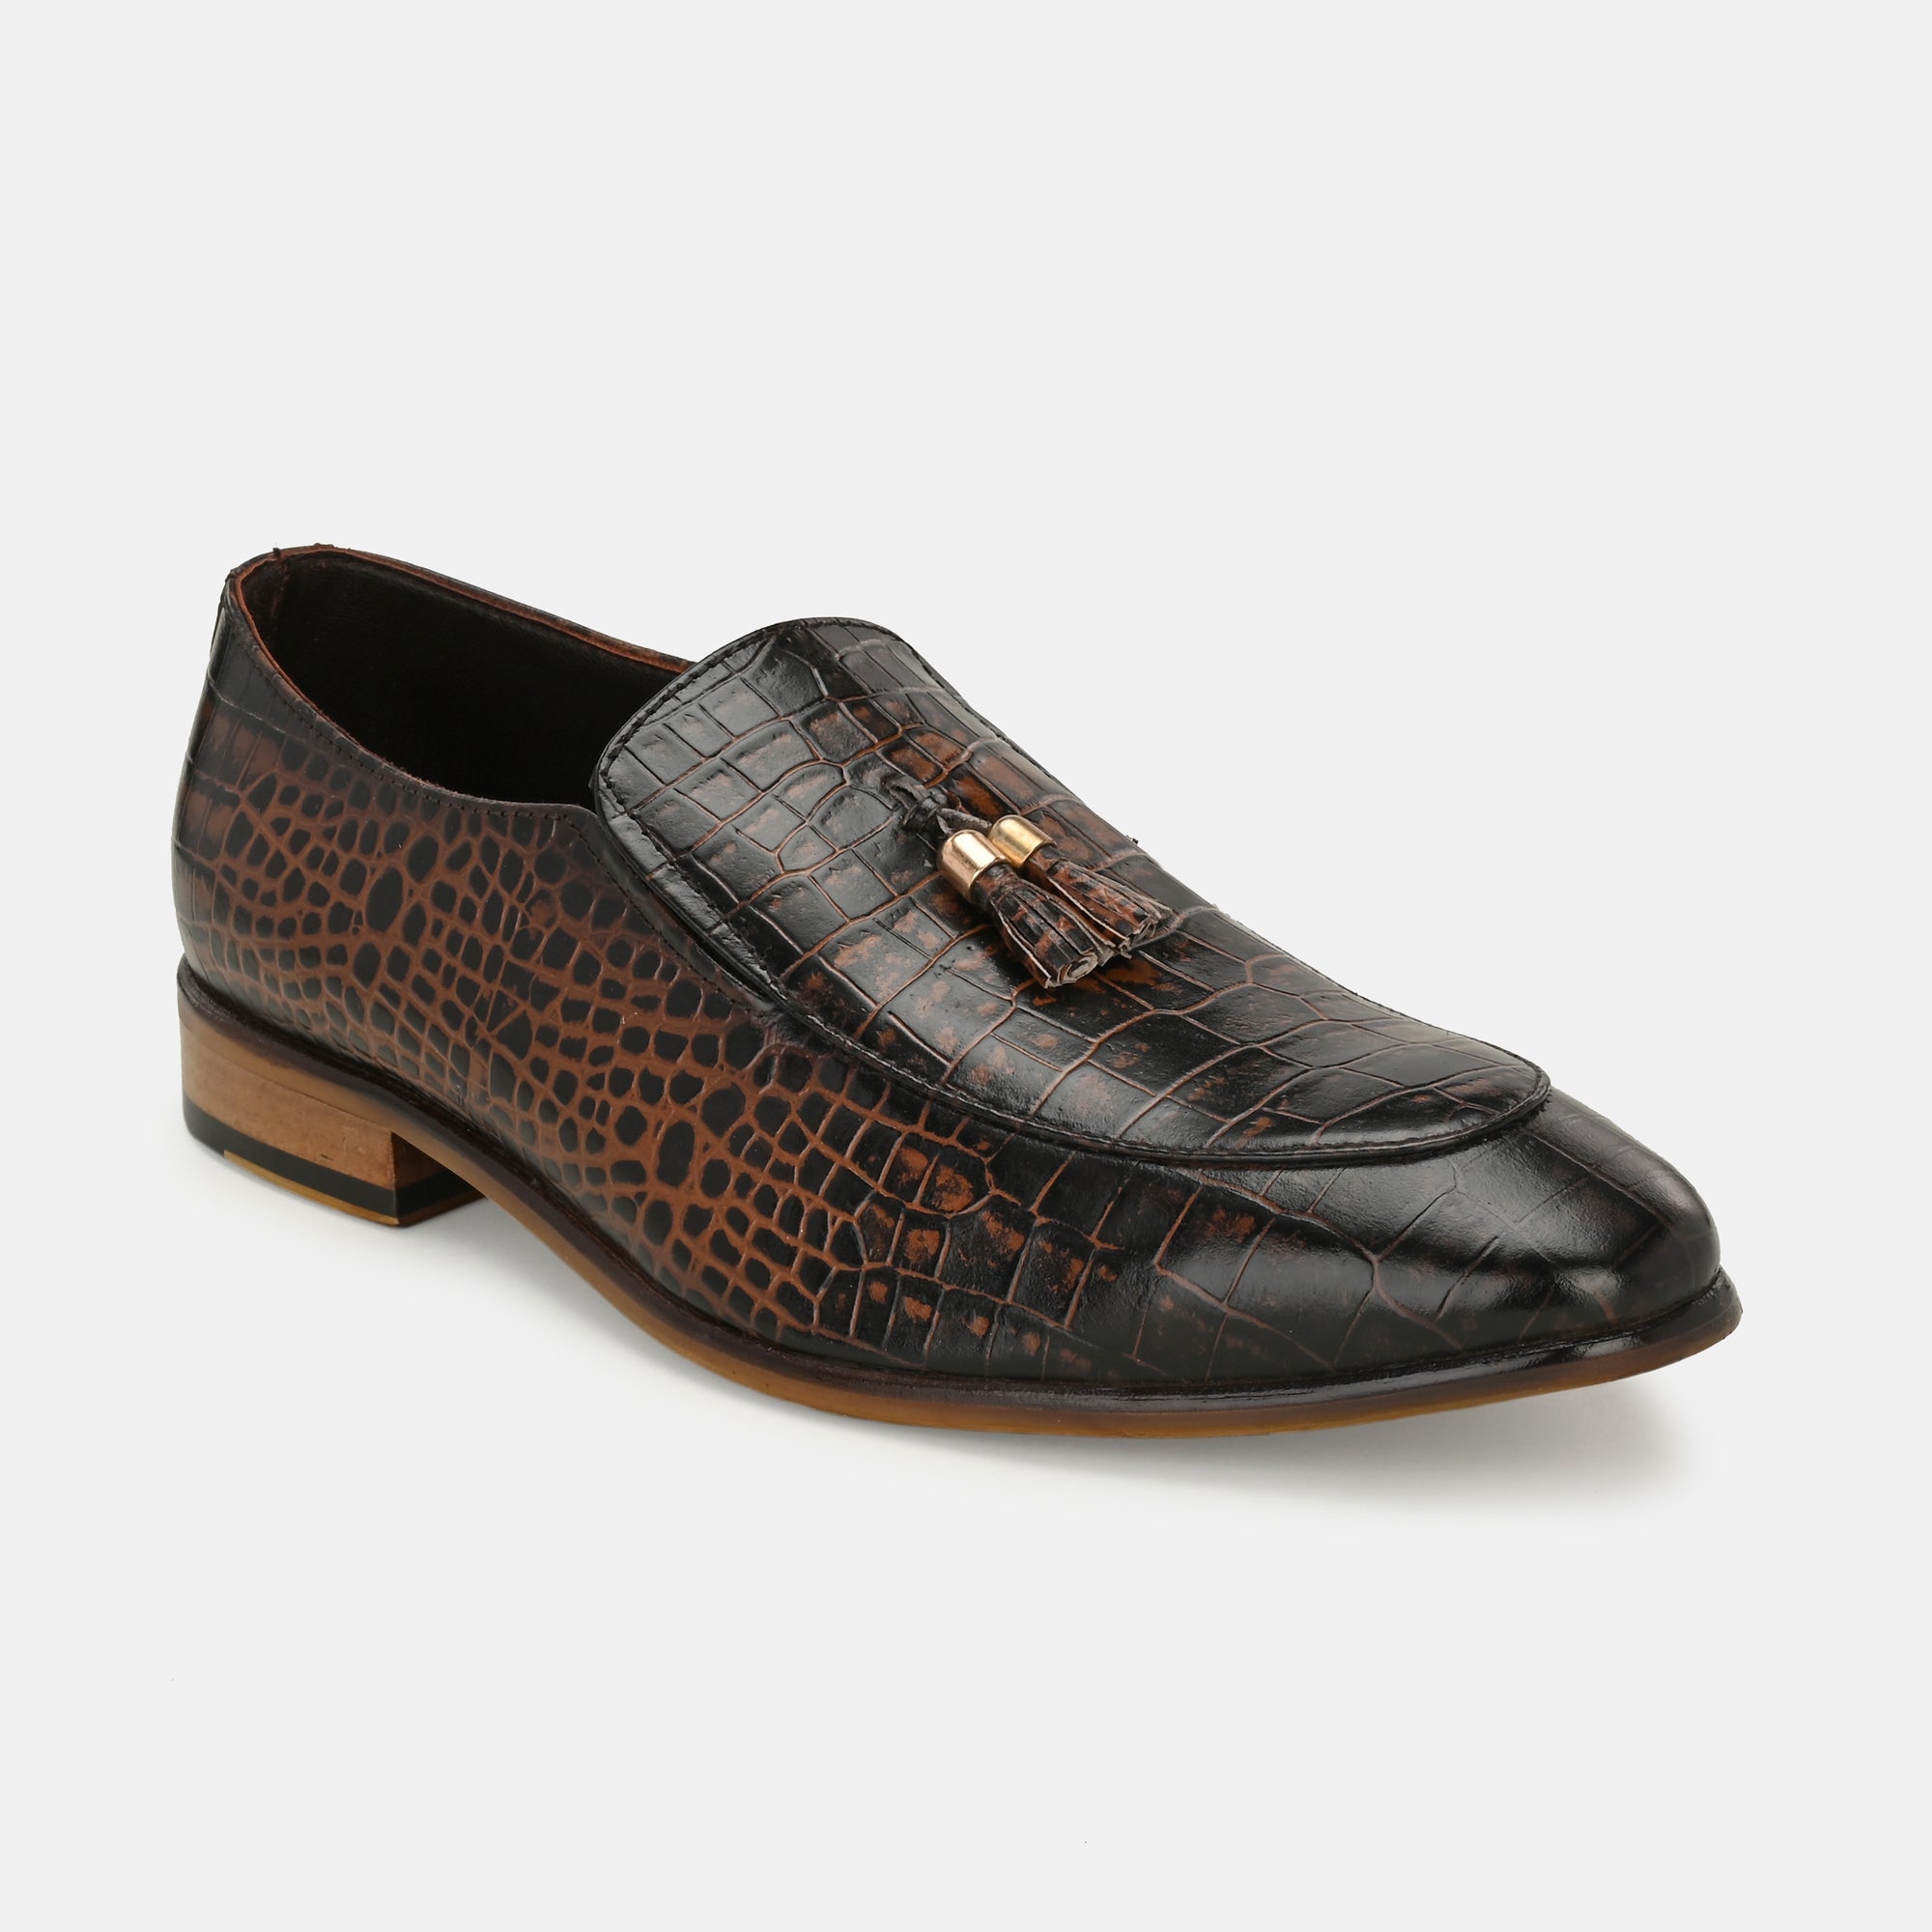 Egoss Leather Slip On Shoes For Men